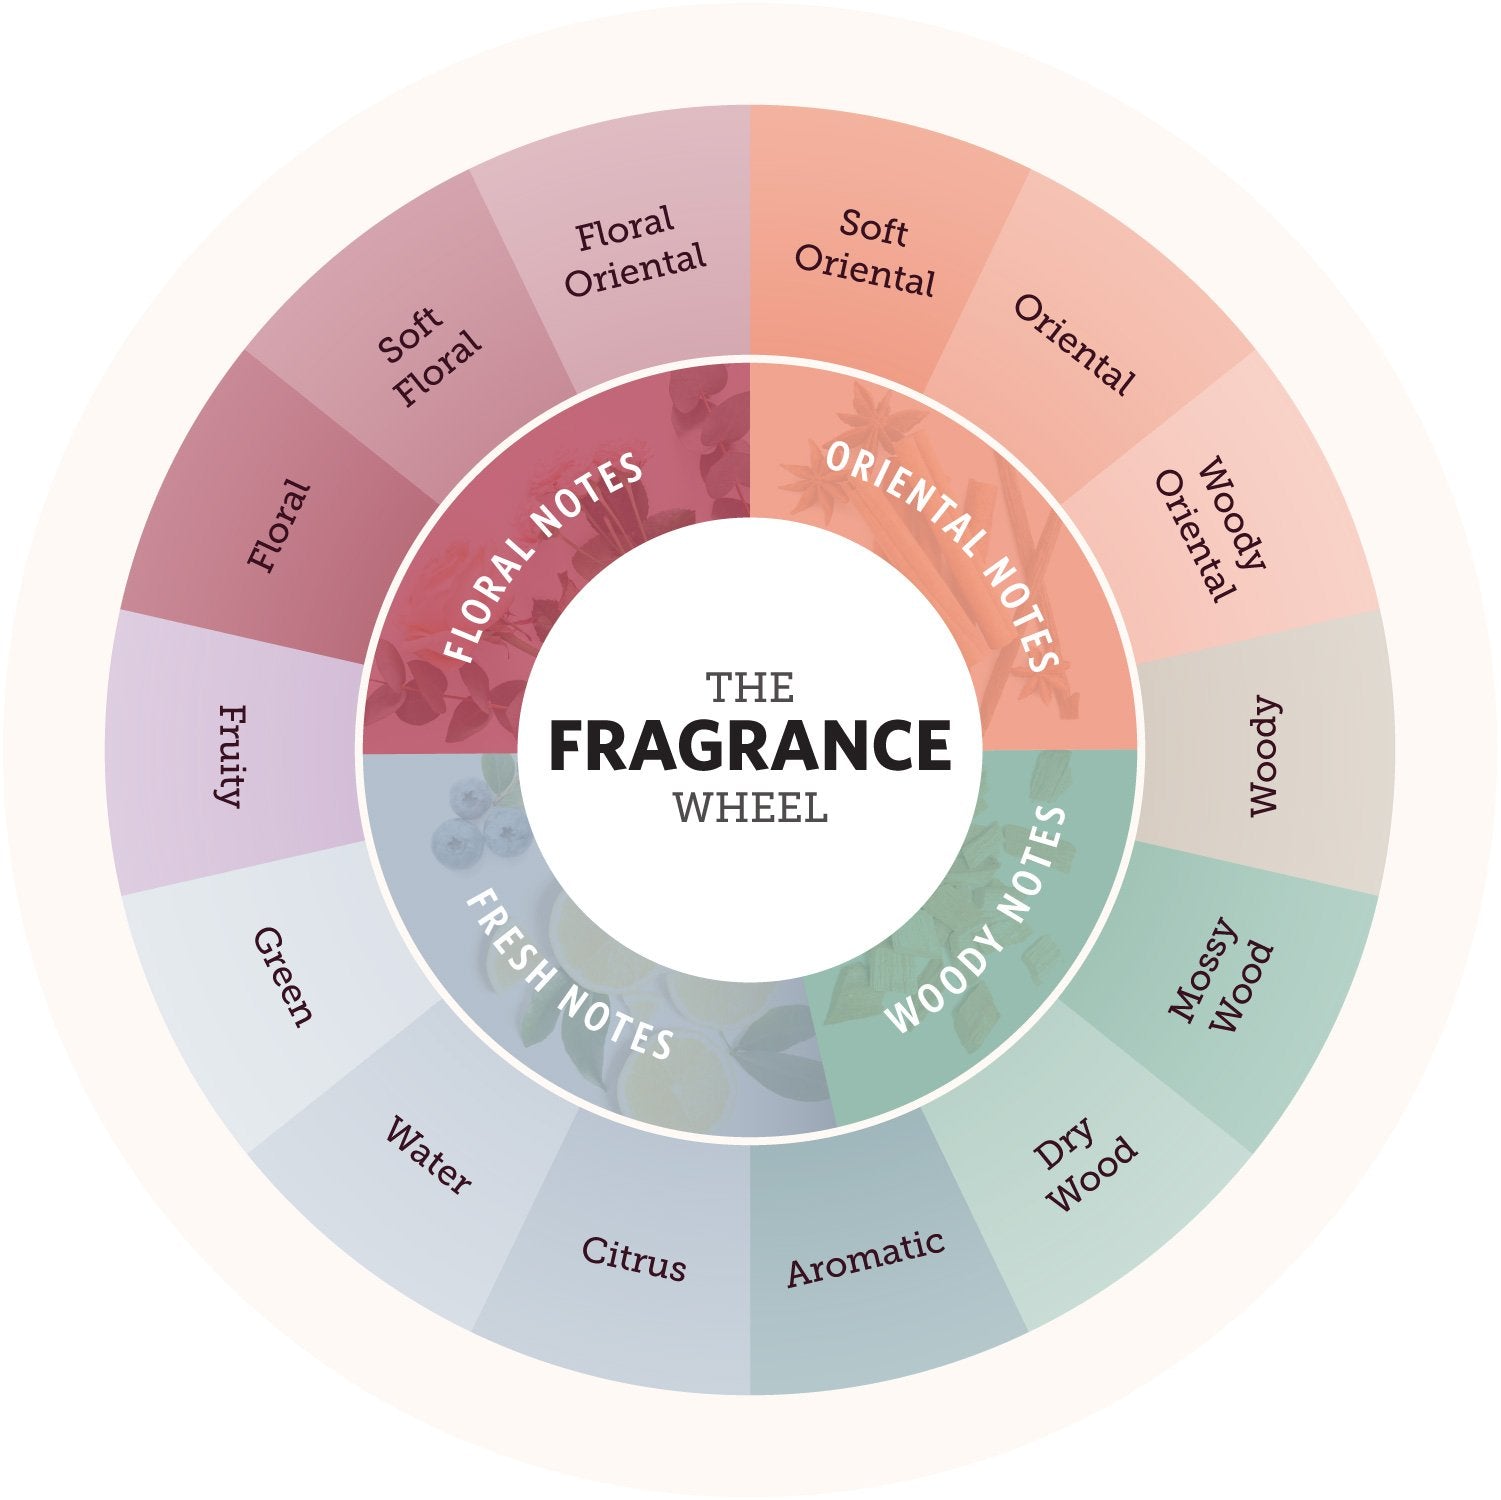 Understanding The Fragrance Wheel